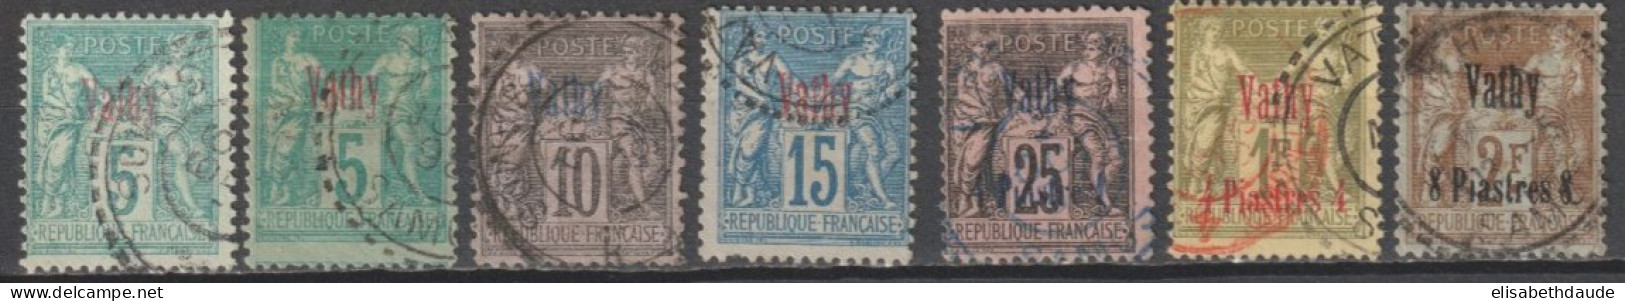 VATHY - 1893 - TYPE SAGE - YVERT N°1+1a+5/7+9/10 OBLITERES (10 SIGNE ROUMET) - COTE = 300 EUR - Oblitérés